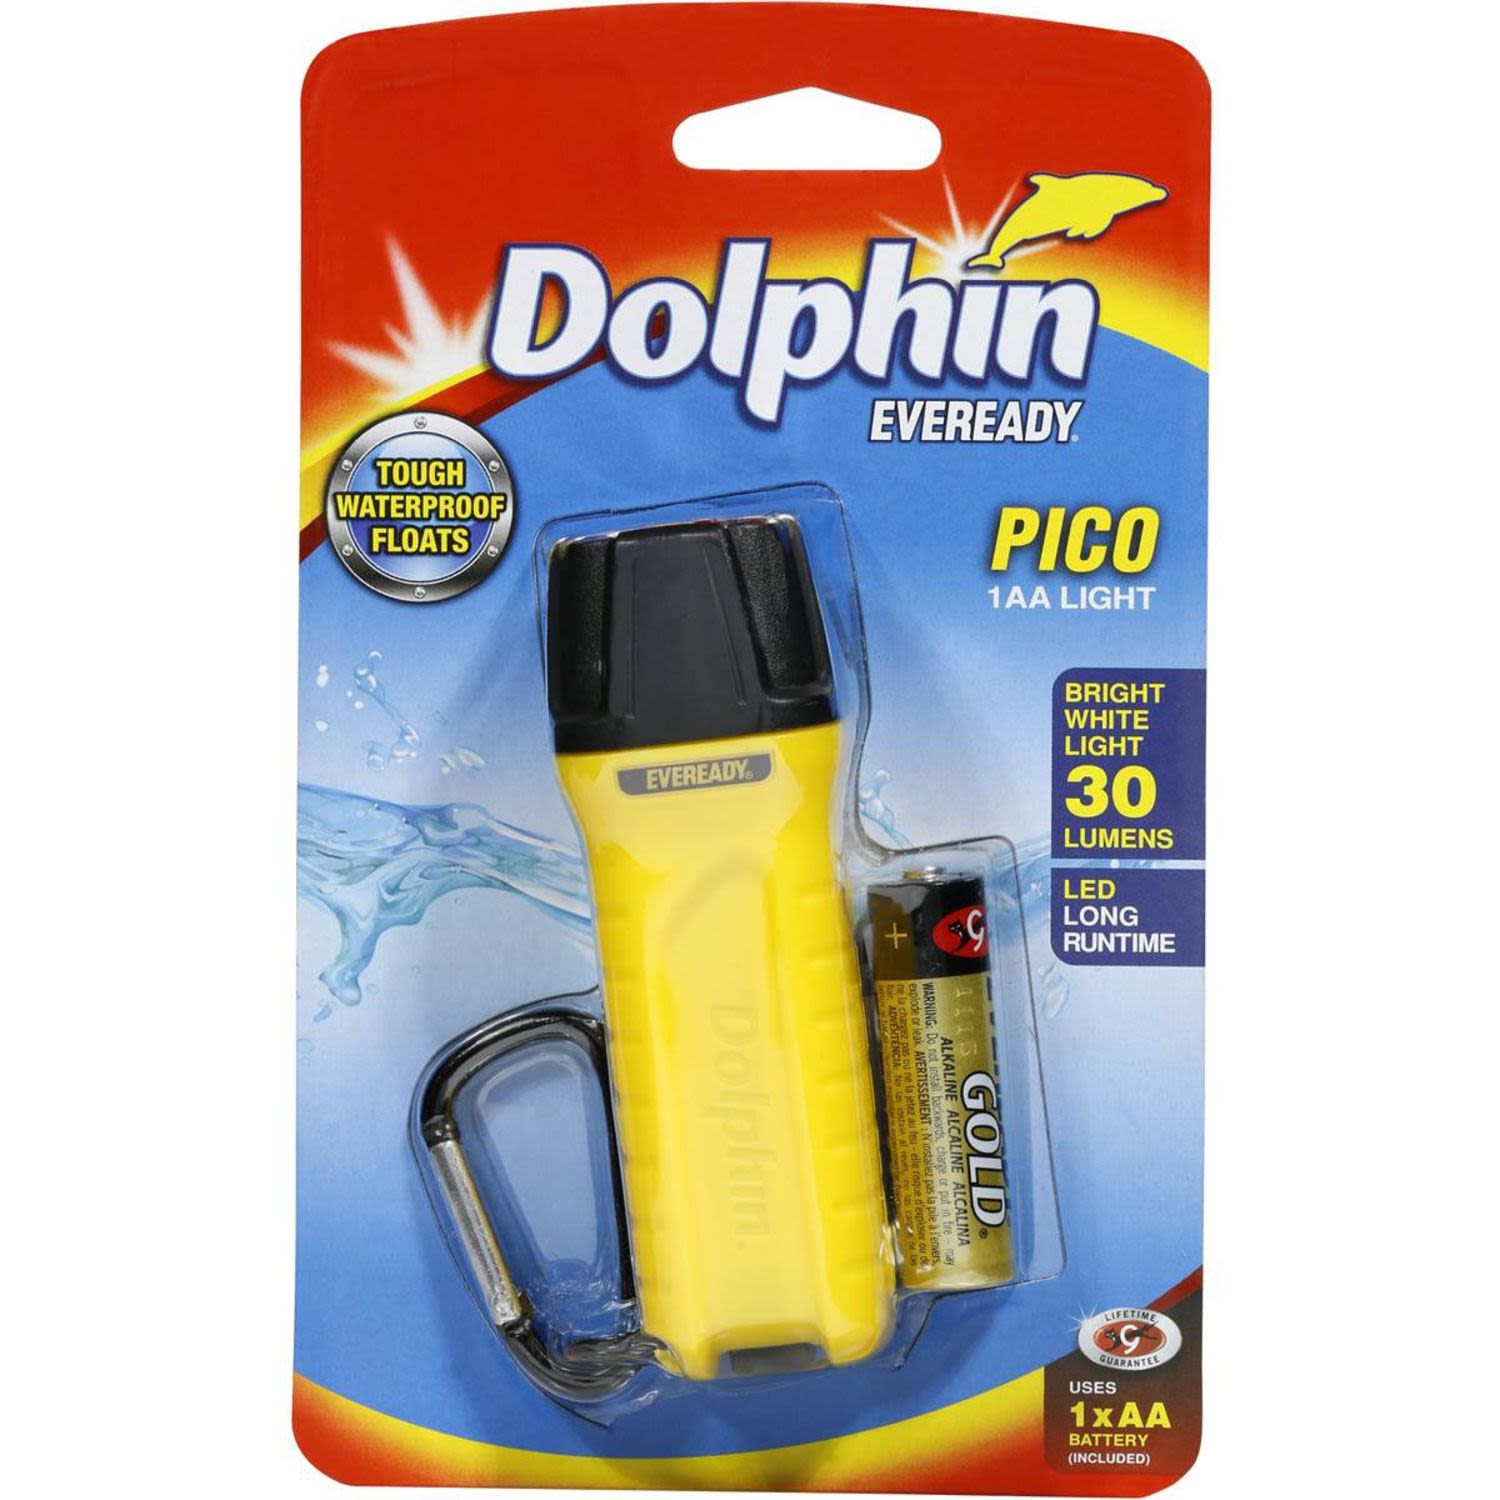 Eveready Dolphin Pico 1AA Light, 1 Each